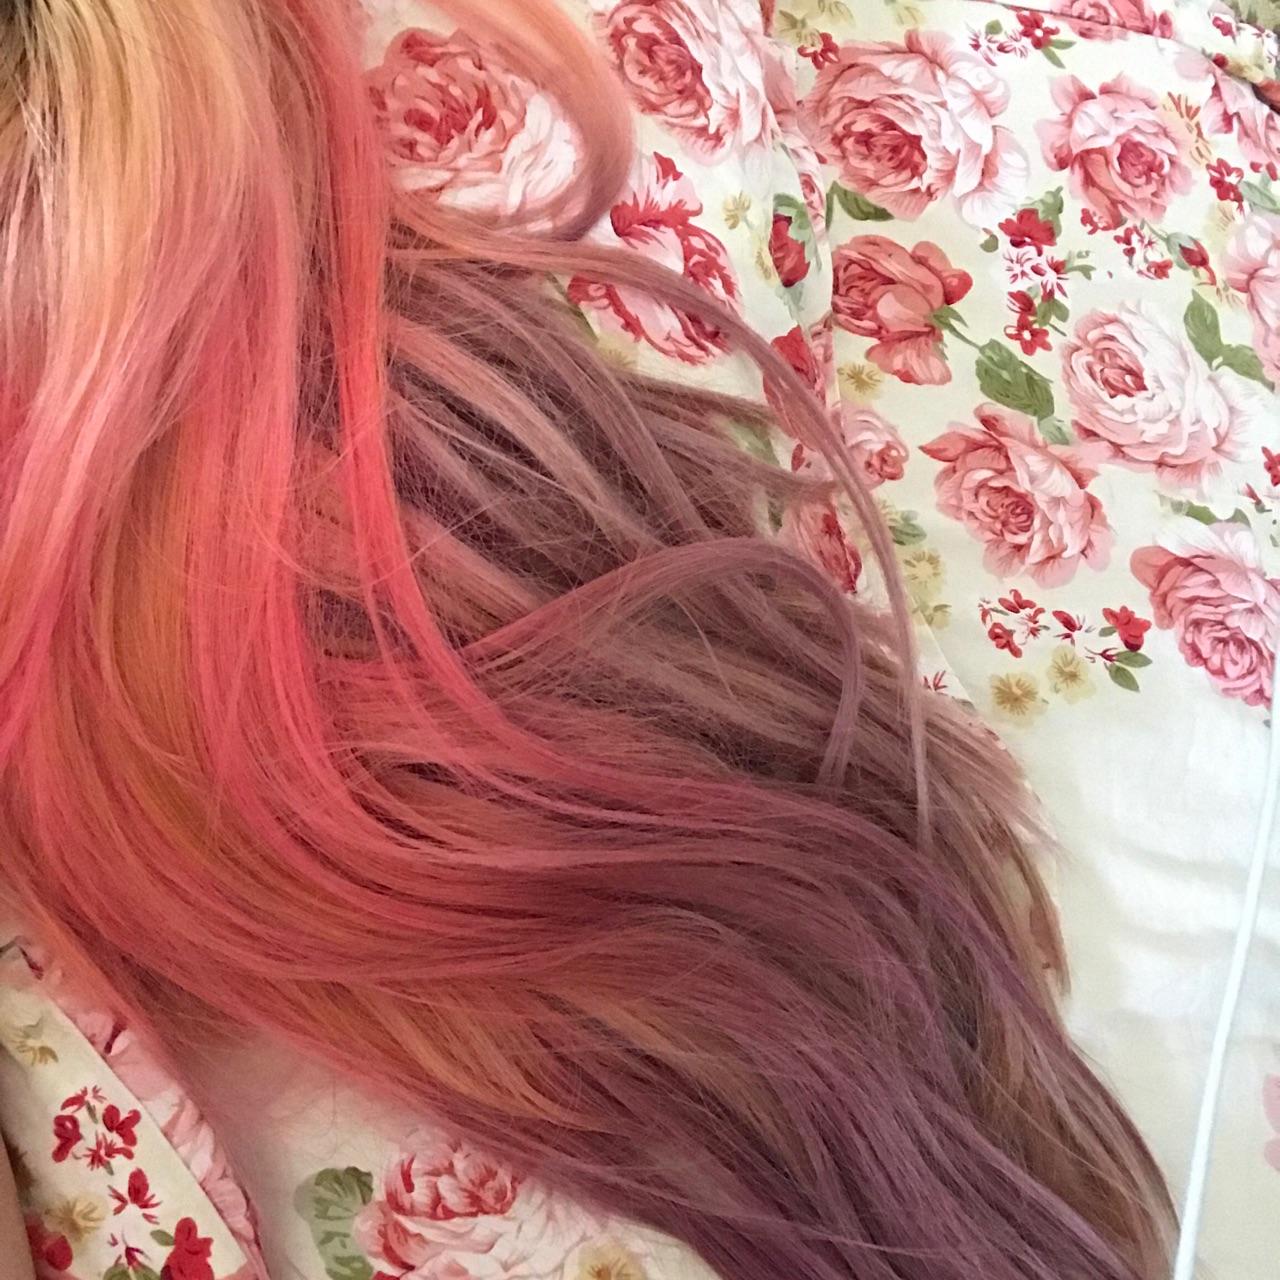 【IZONE】果然是和名字一样美丽的发色，宫脇咲良的粉色长发也太好看了吧 - 哔哩哔哩